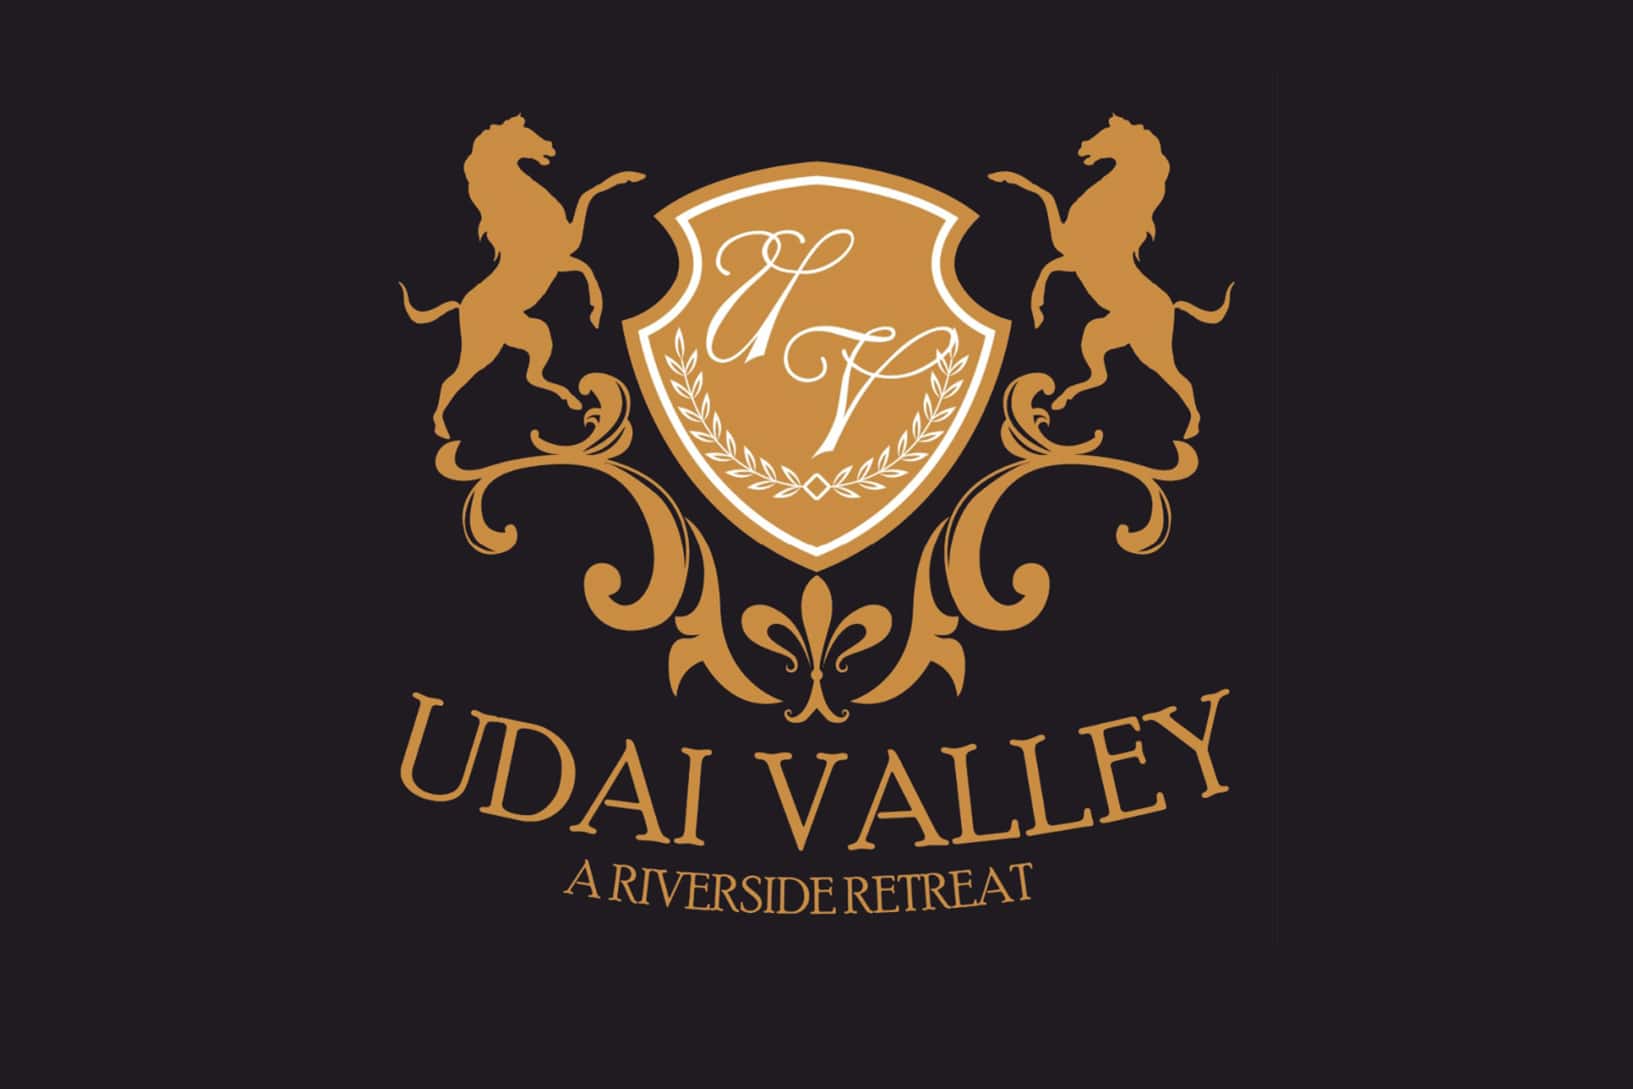 Udai Valley